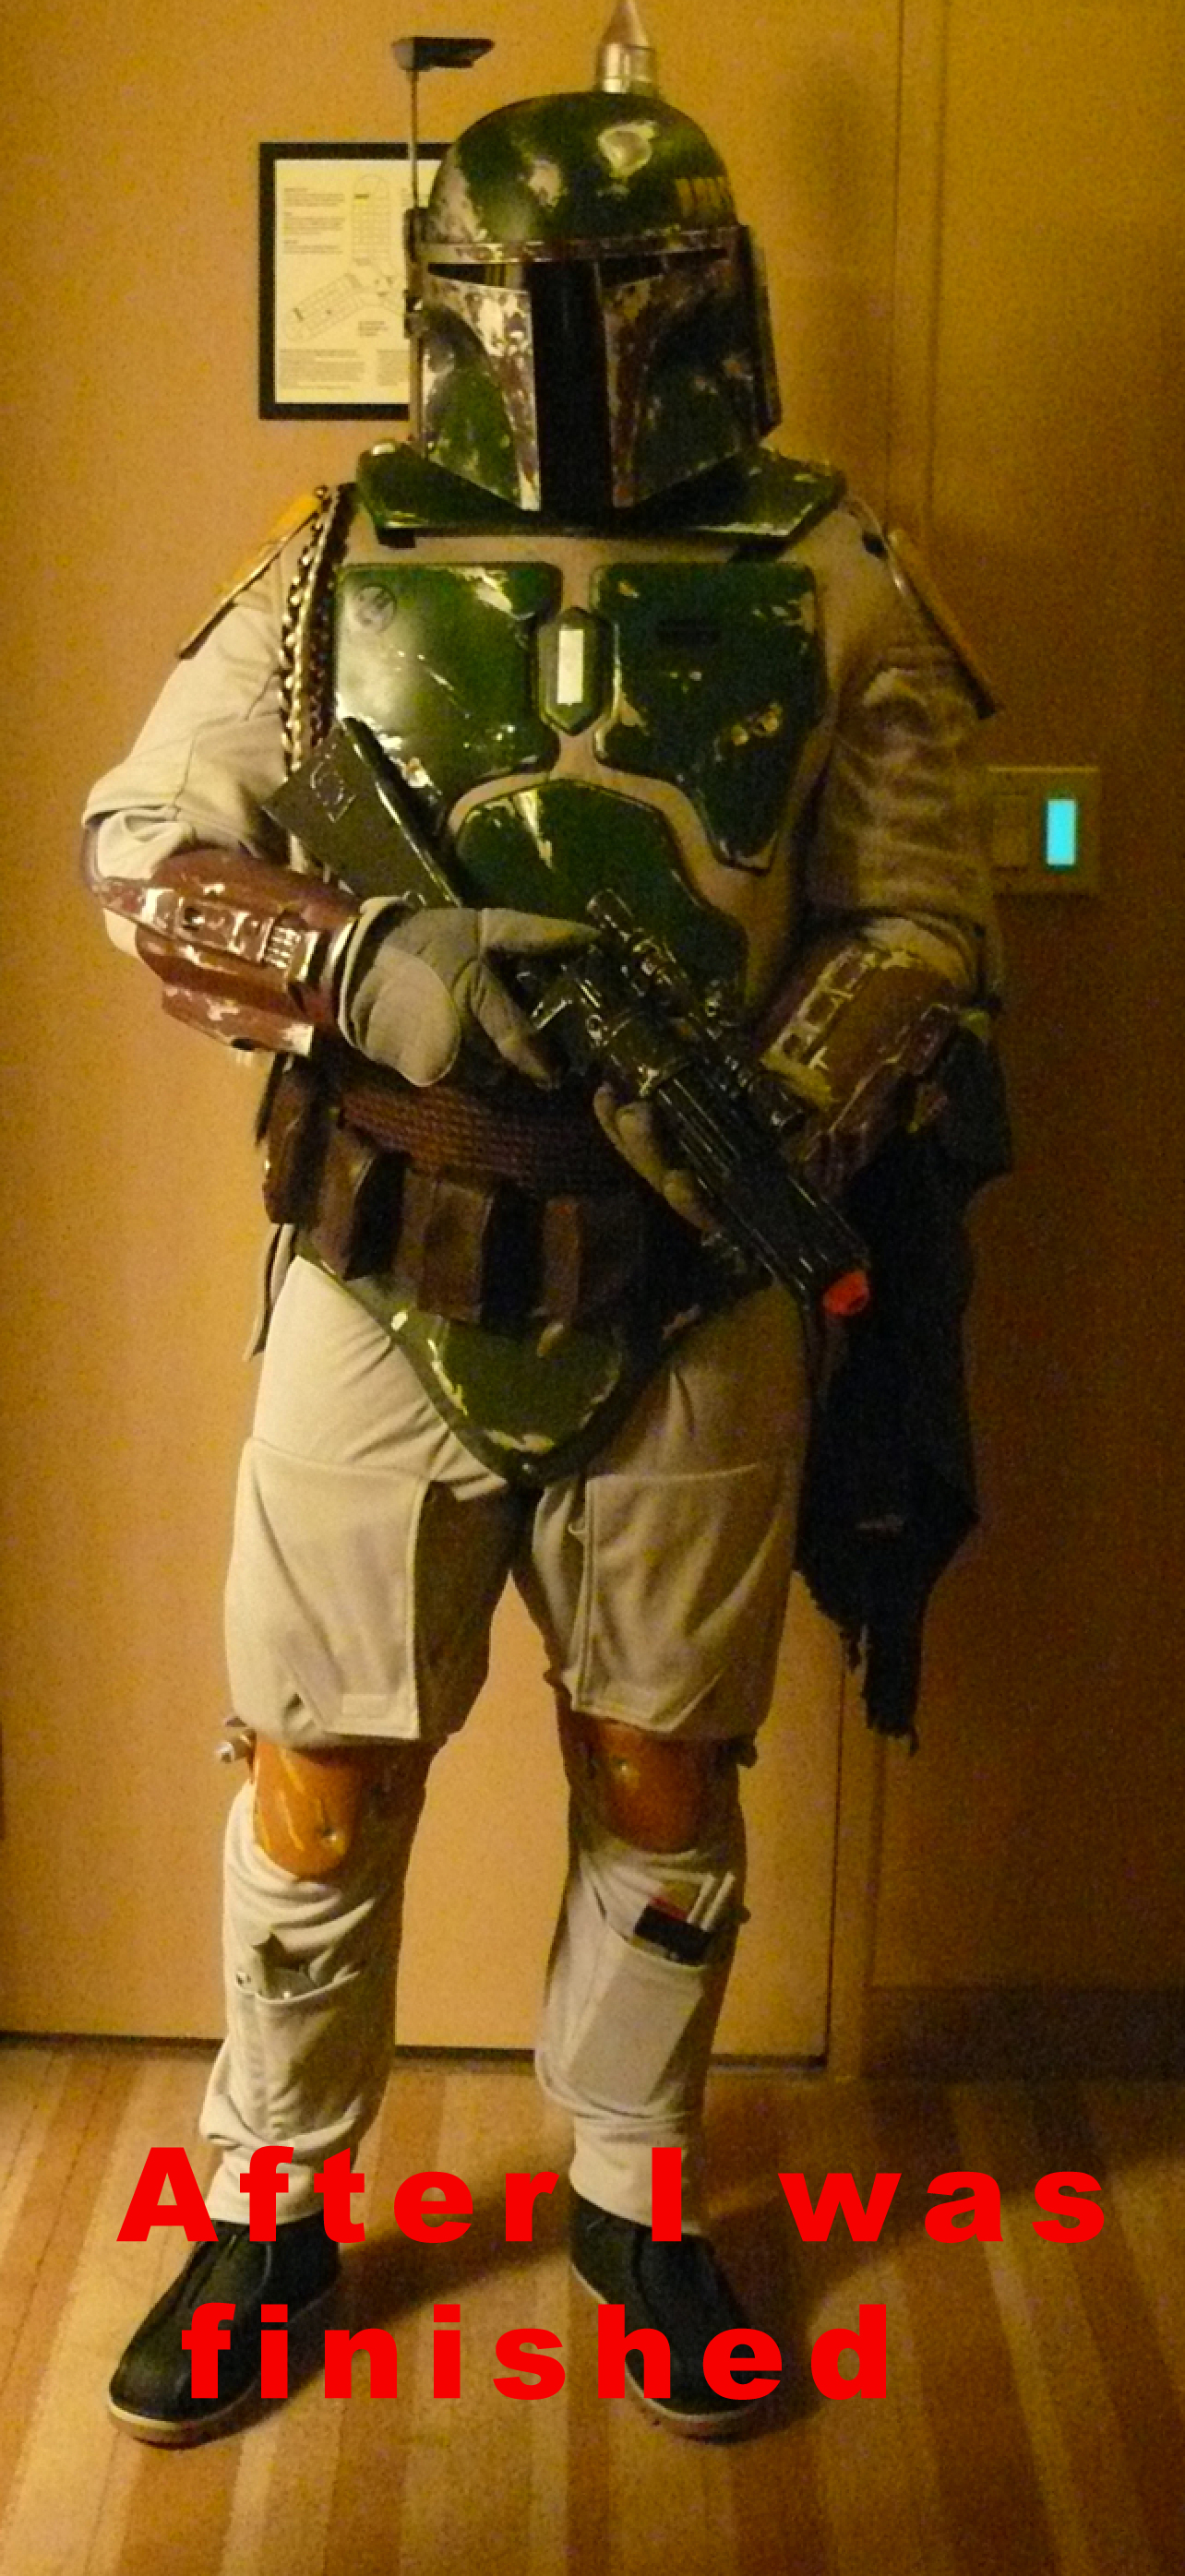 Costume contest in 2010